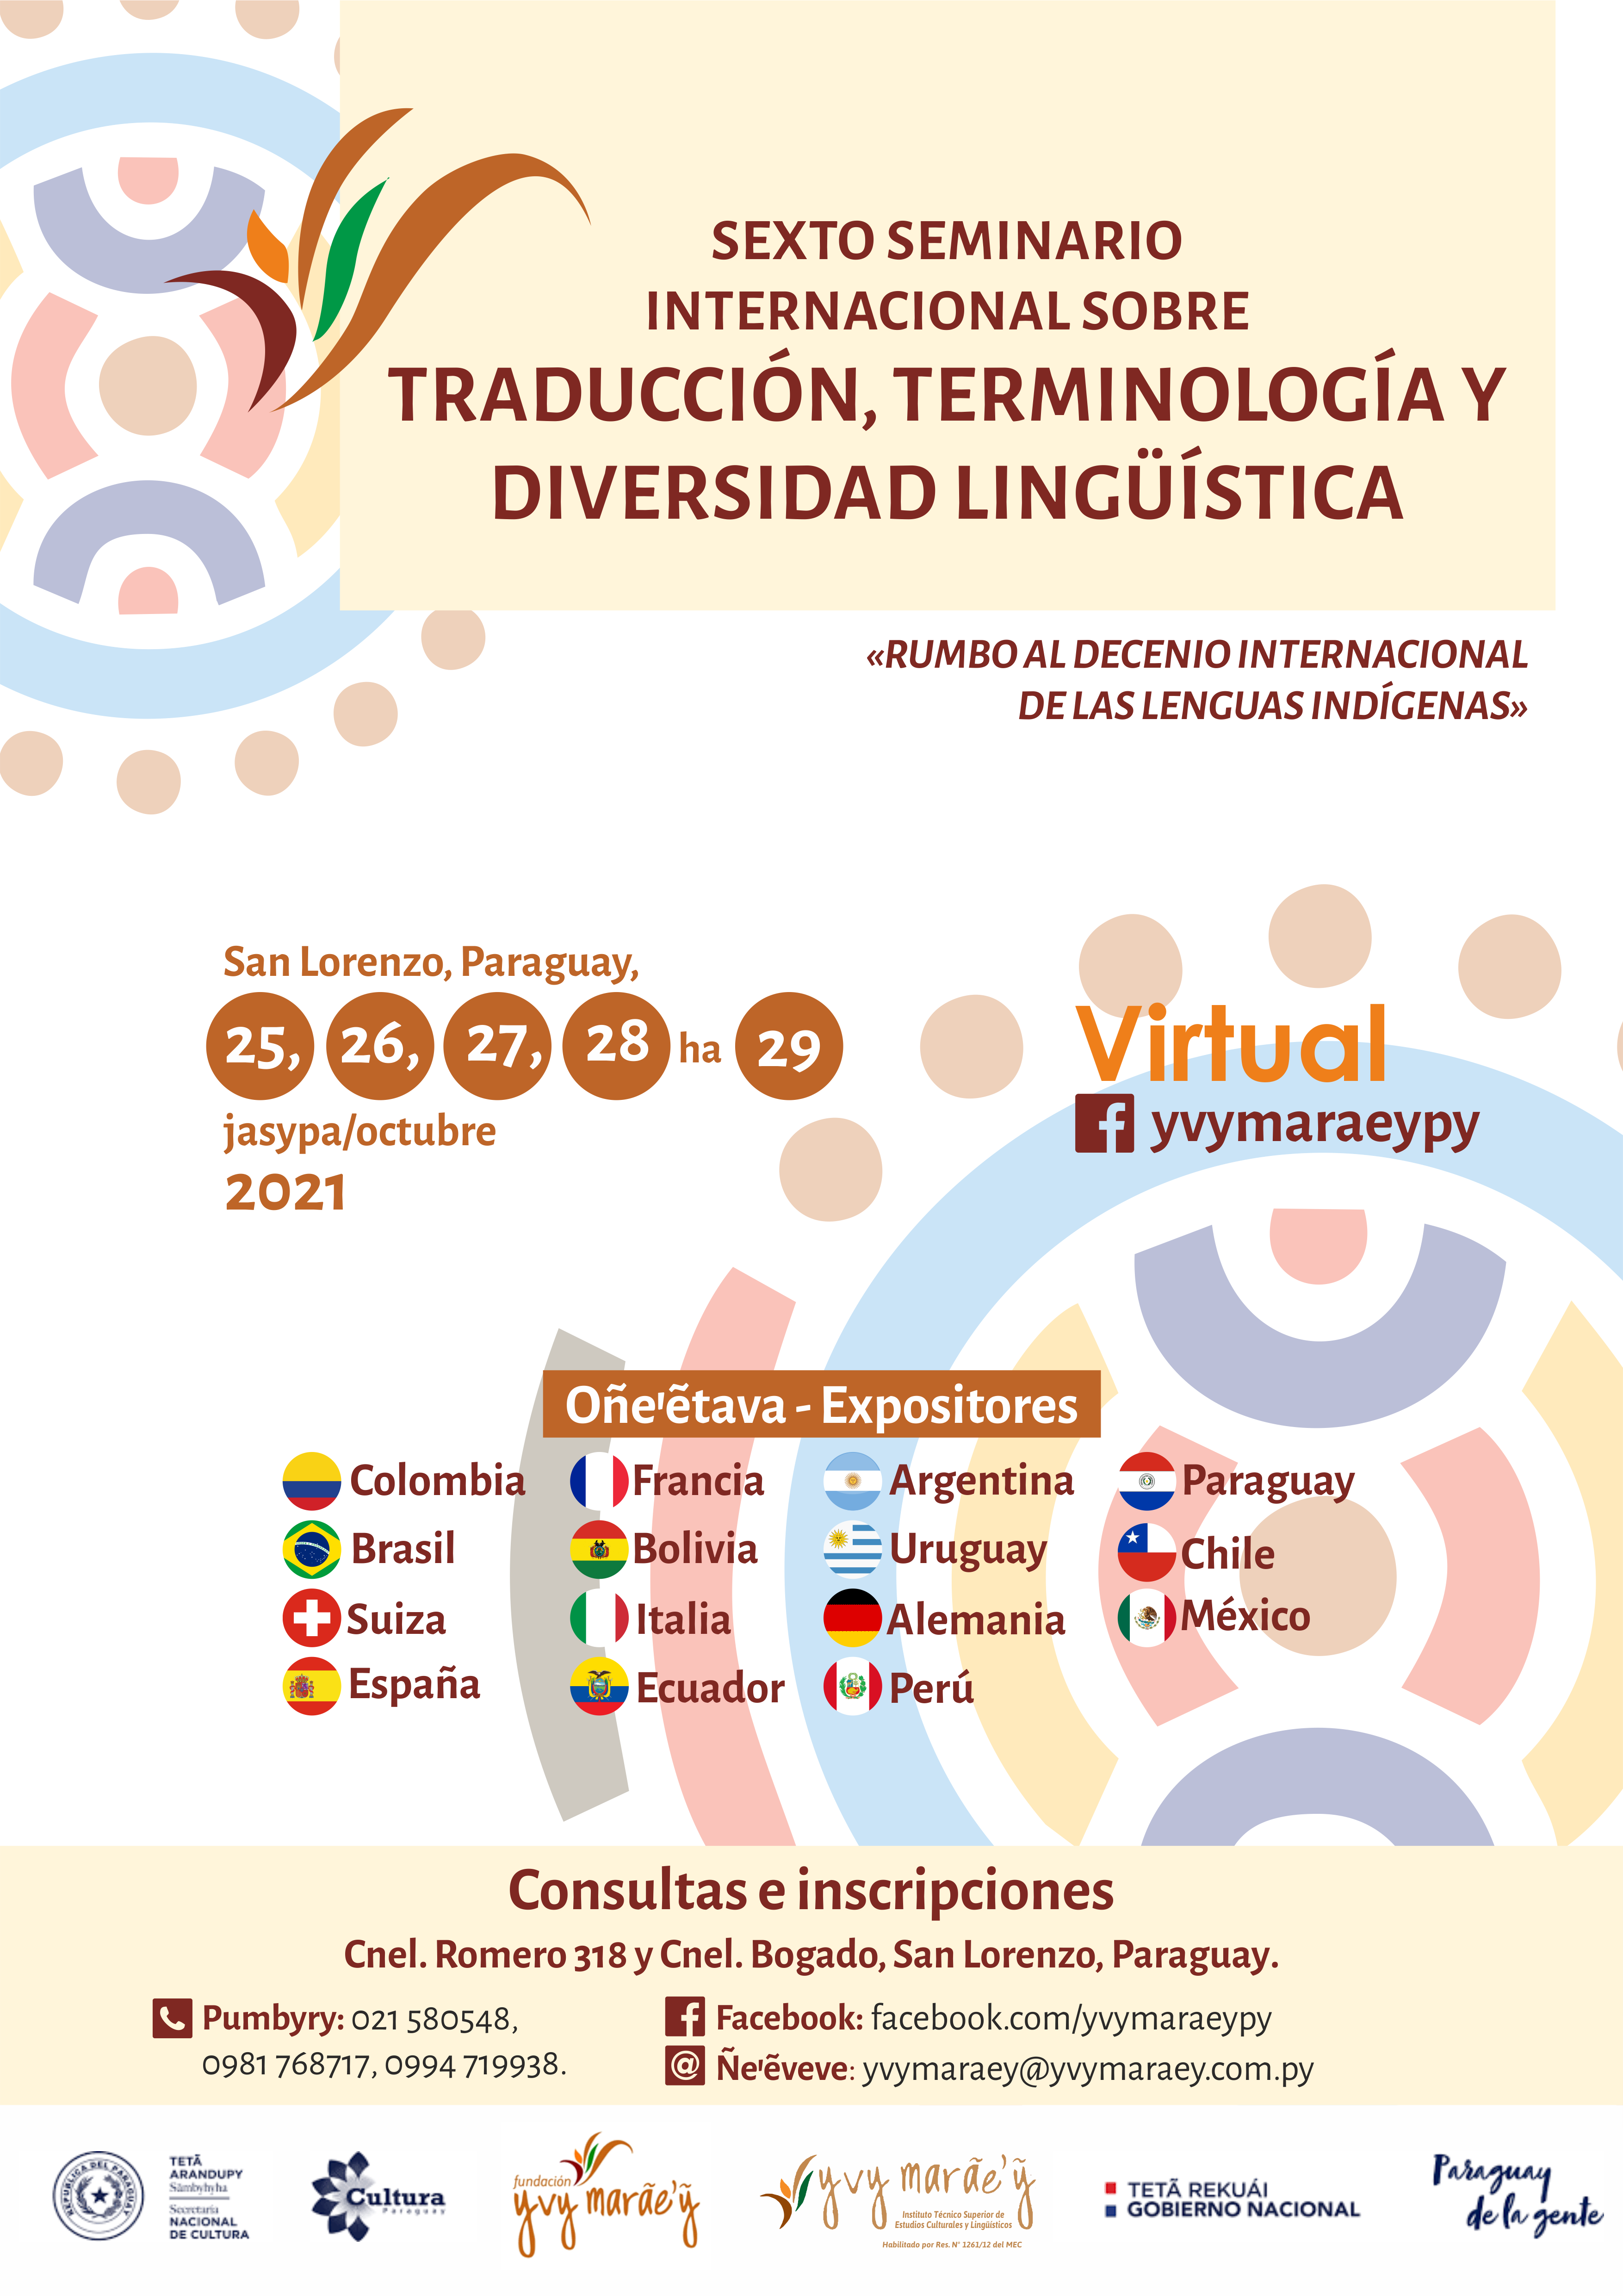 Seminario Internacional sobre Traducción, Terminología y Diversidad Lingüística será en octubre imagen